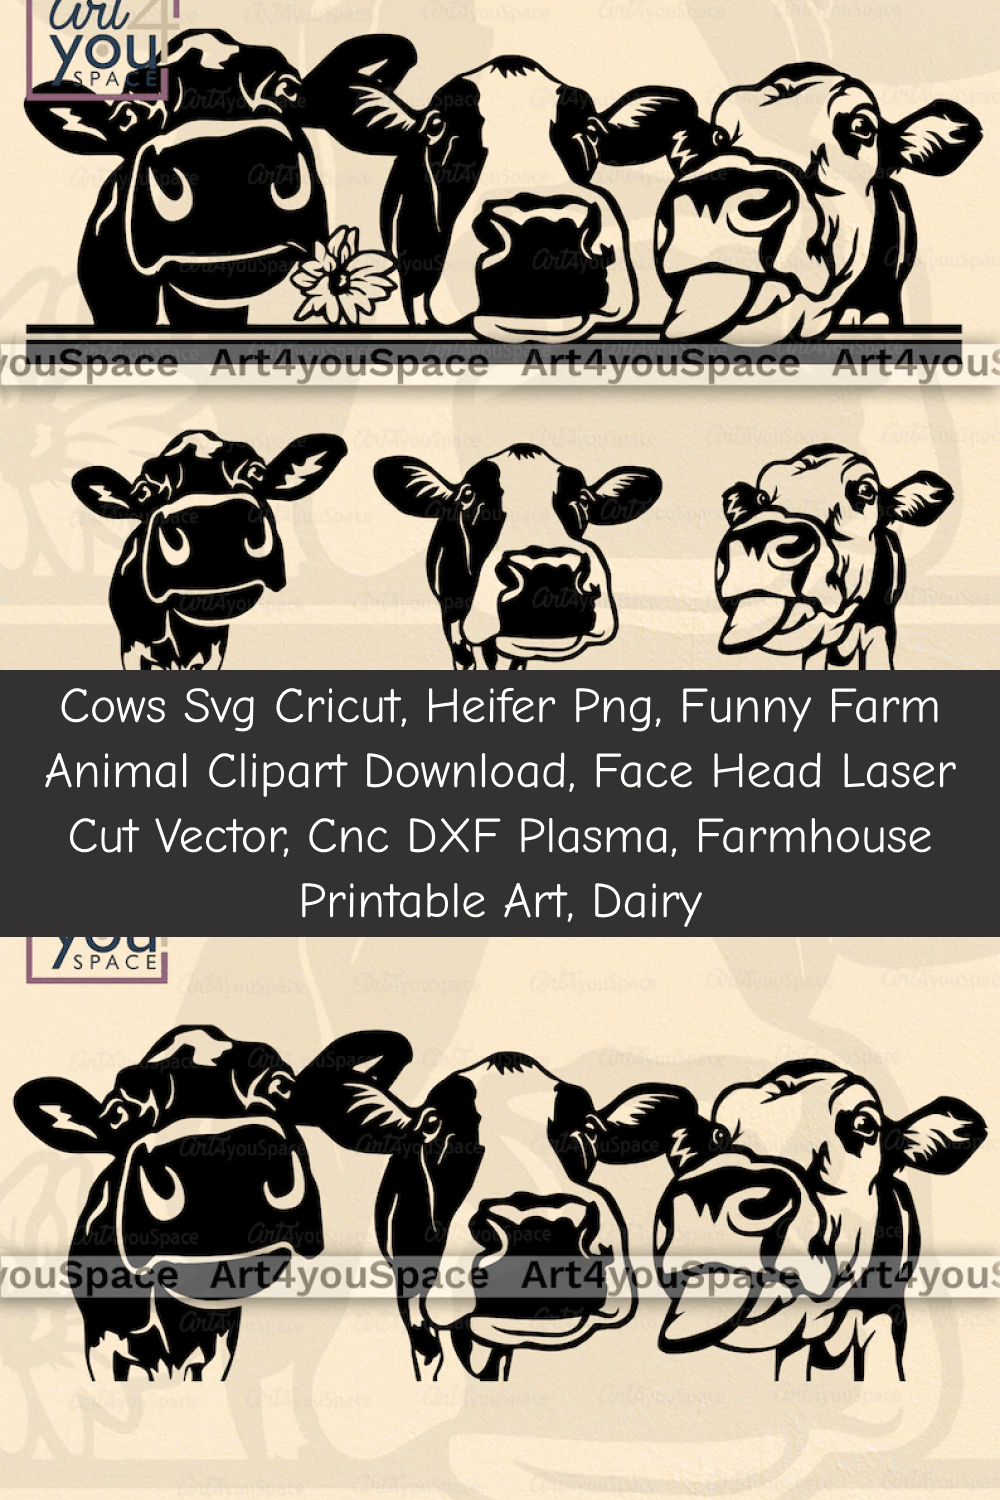 Plasma farmhouse printable art dairy pinterest.